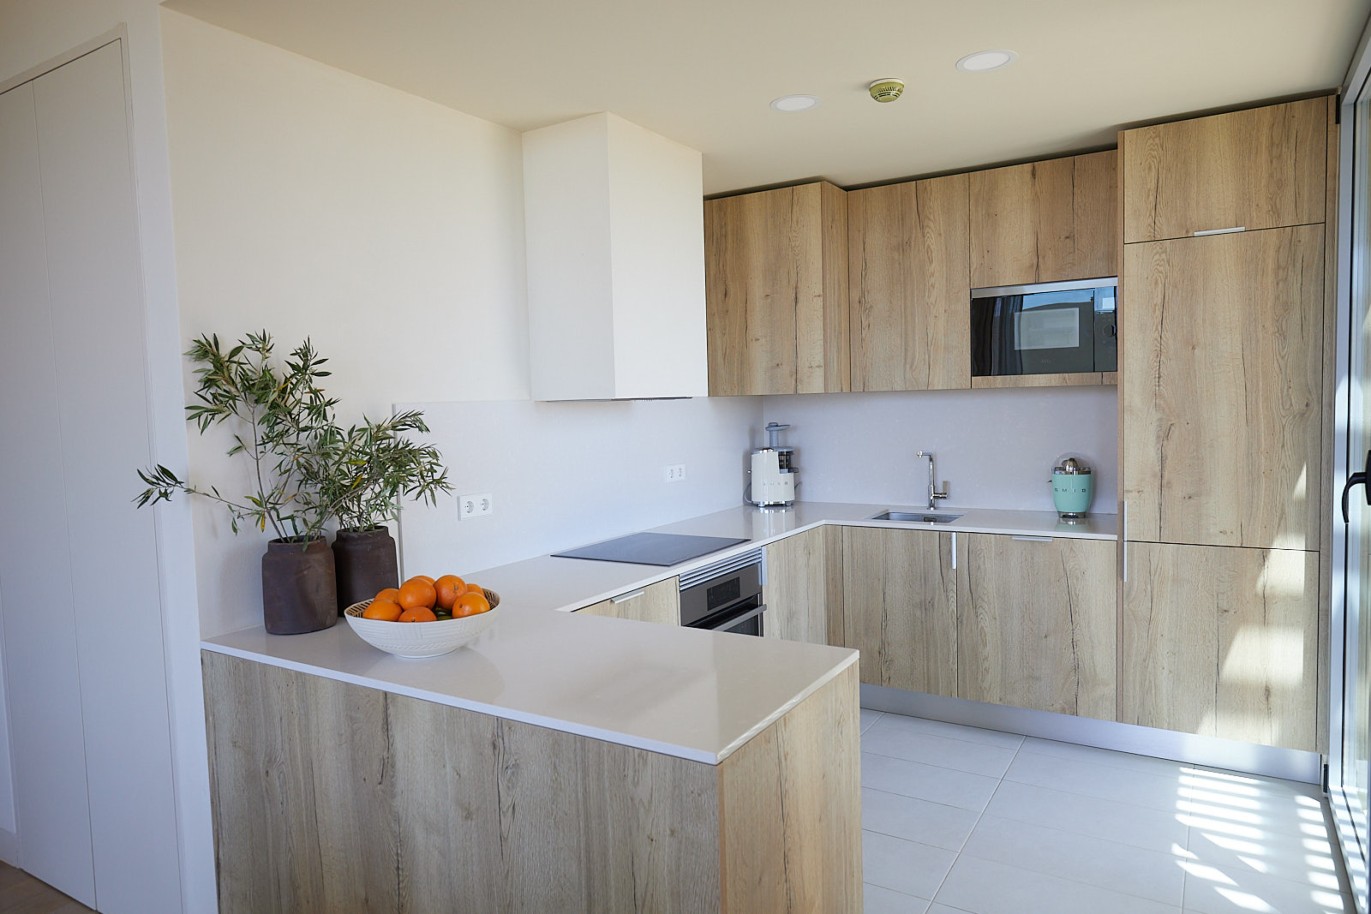 3 bedroom flat in resort, for sale in Porches, Algarve_230745